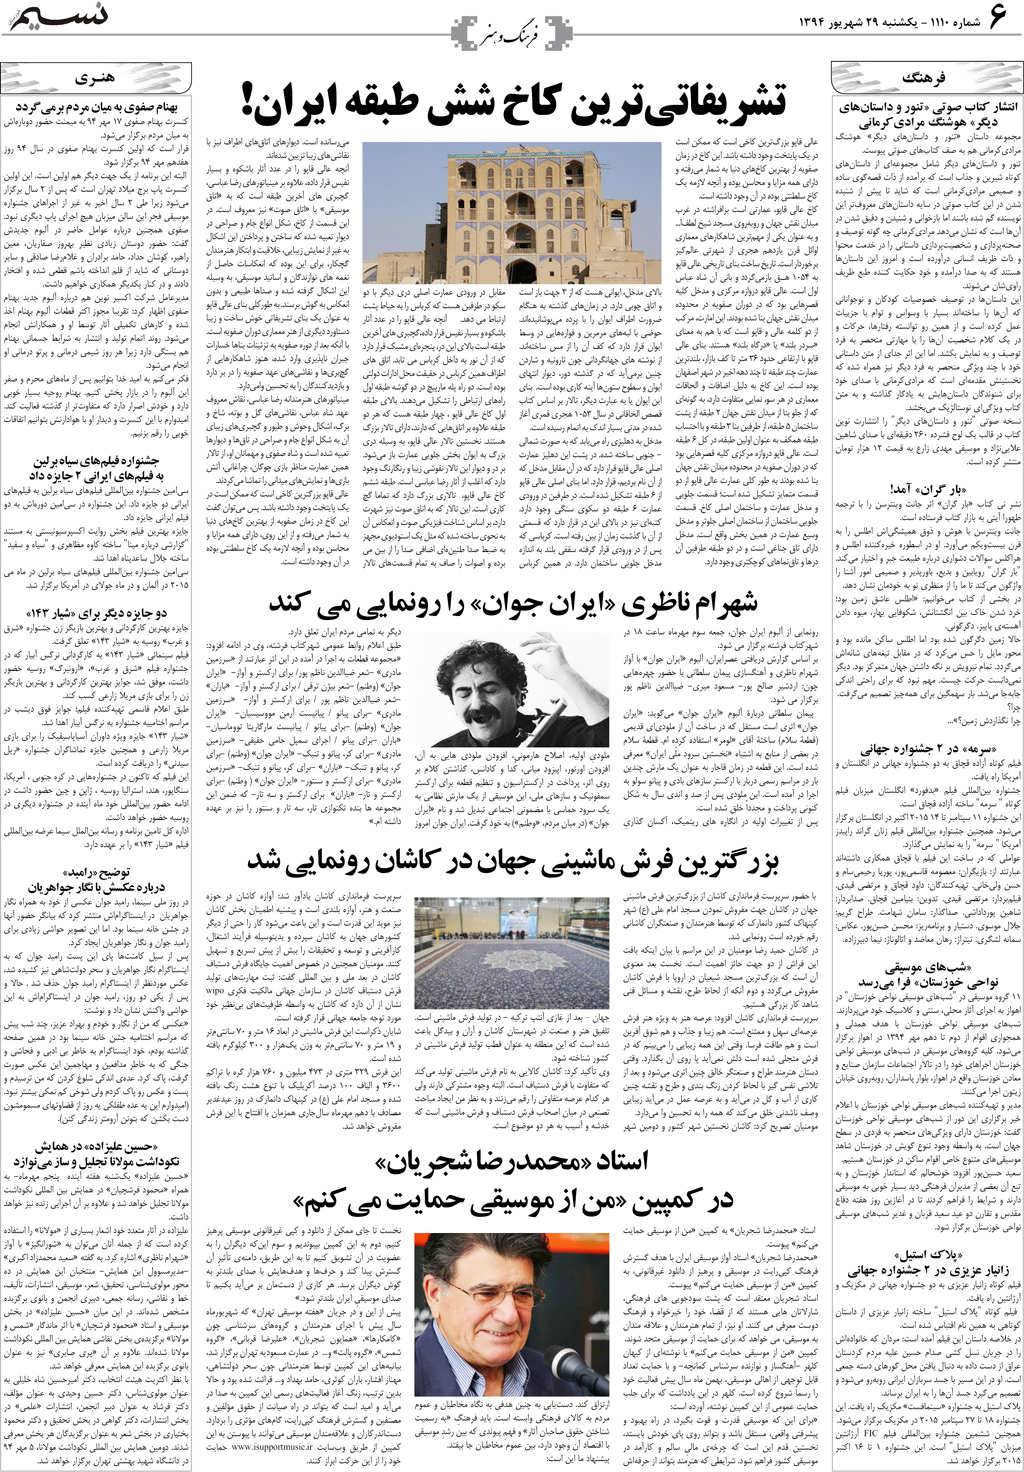 صفحه فرهنگ و هنر روزنامه نسیم شماره 1110